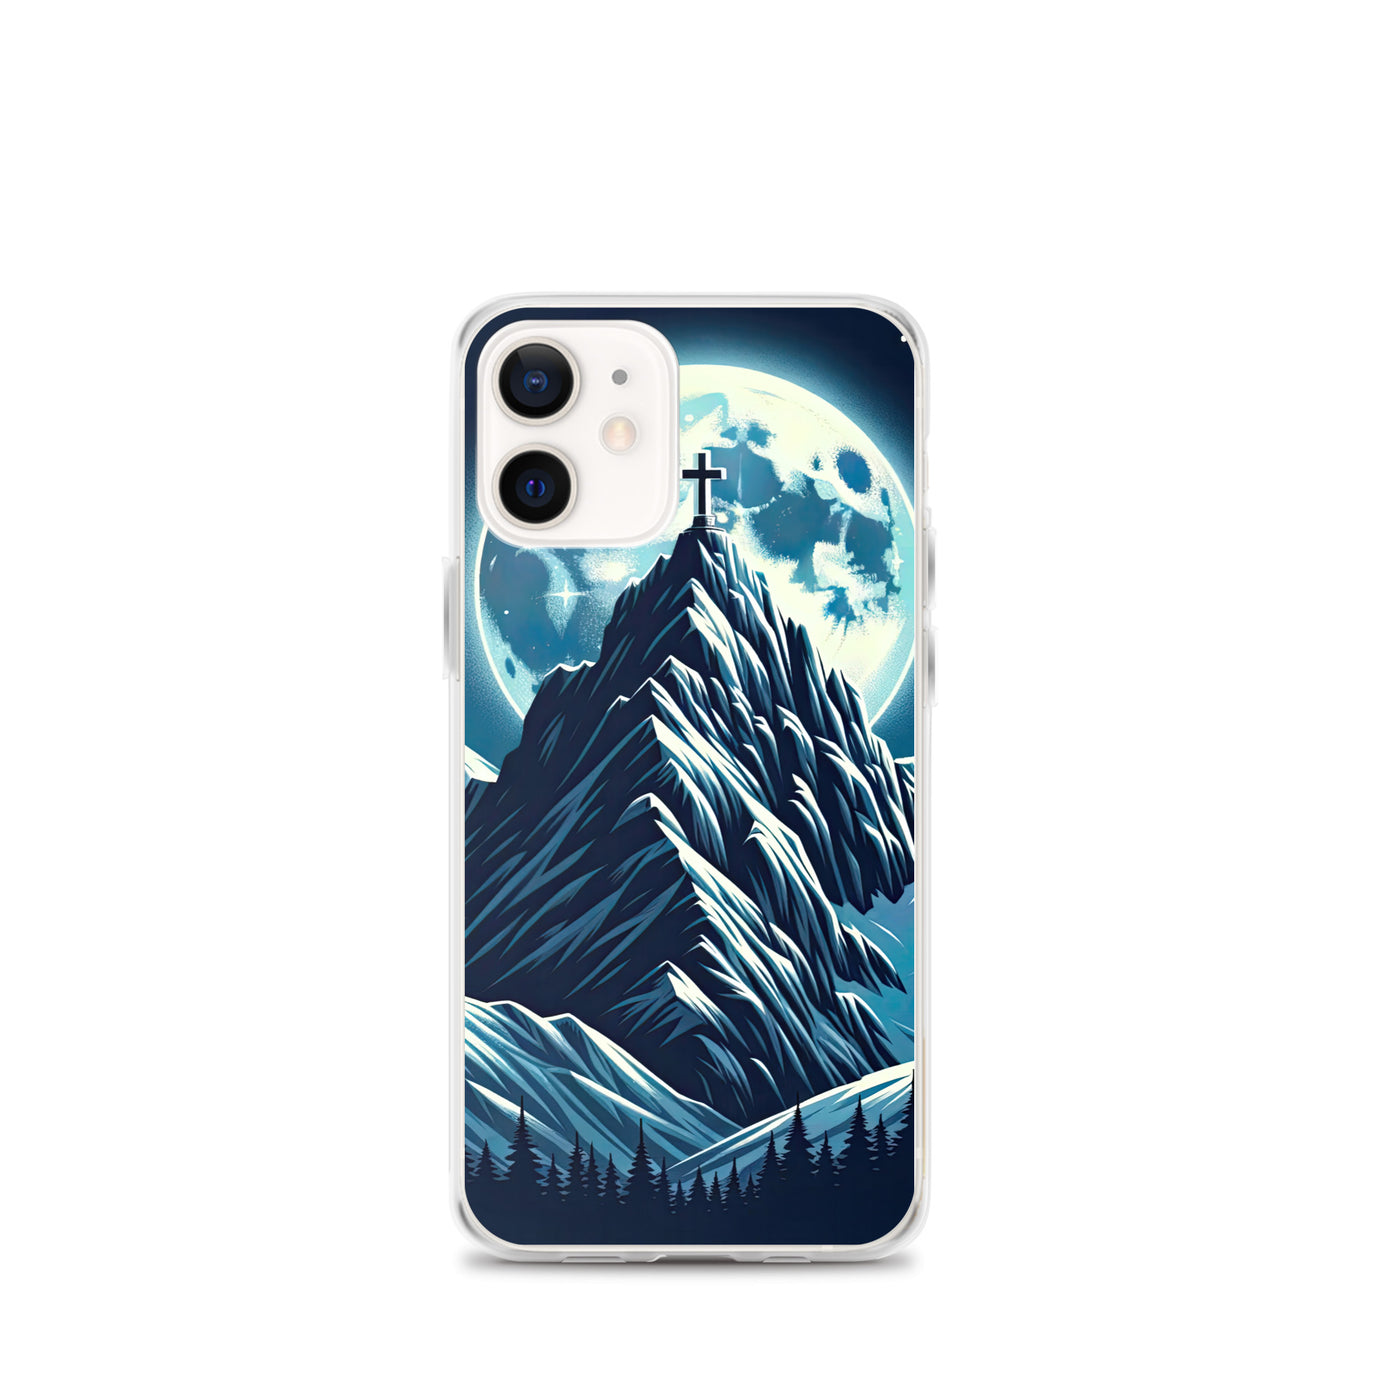 Mondnacht und Gipfelkreuz in den Alpen, glitzernde Schneegipfel - iPhone Schutzhülle (durchsichtig) berge xxx yyy zzz iPhone 12 mini